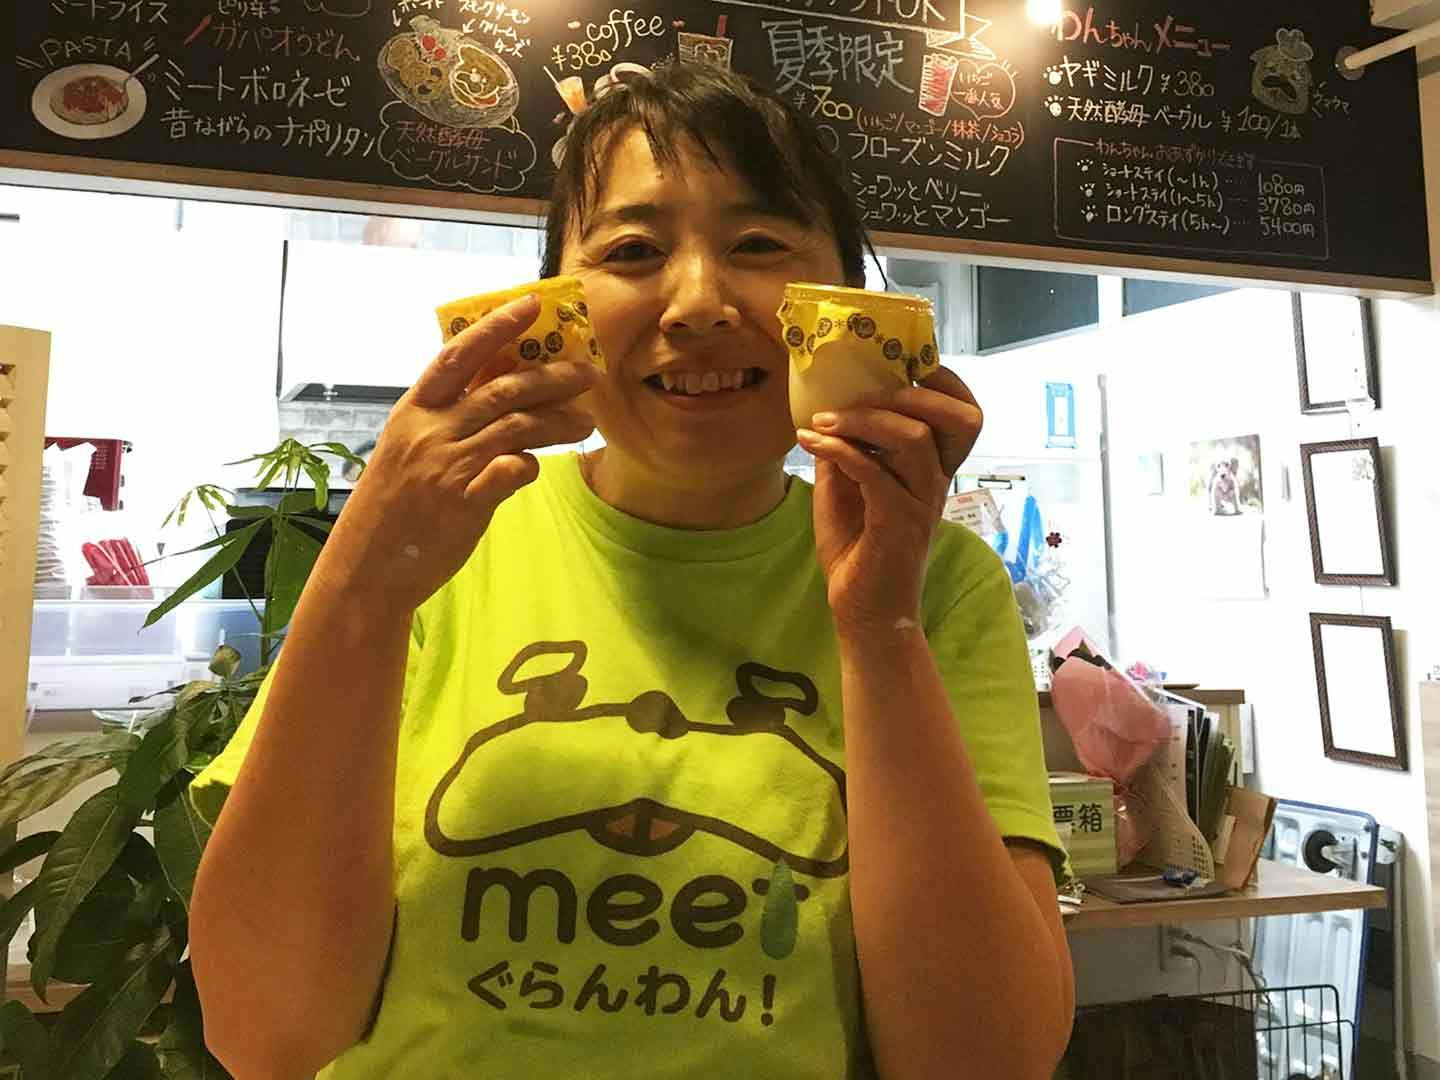 シニア犬向けの体験型ドッグカフェ『meet ぐらんわん！』を営む中村真弓さん